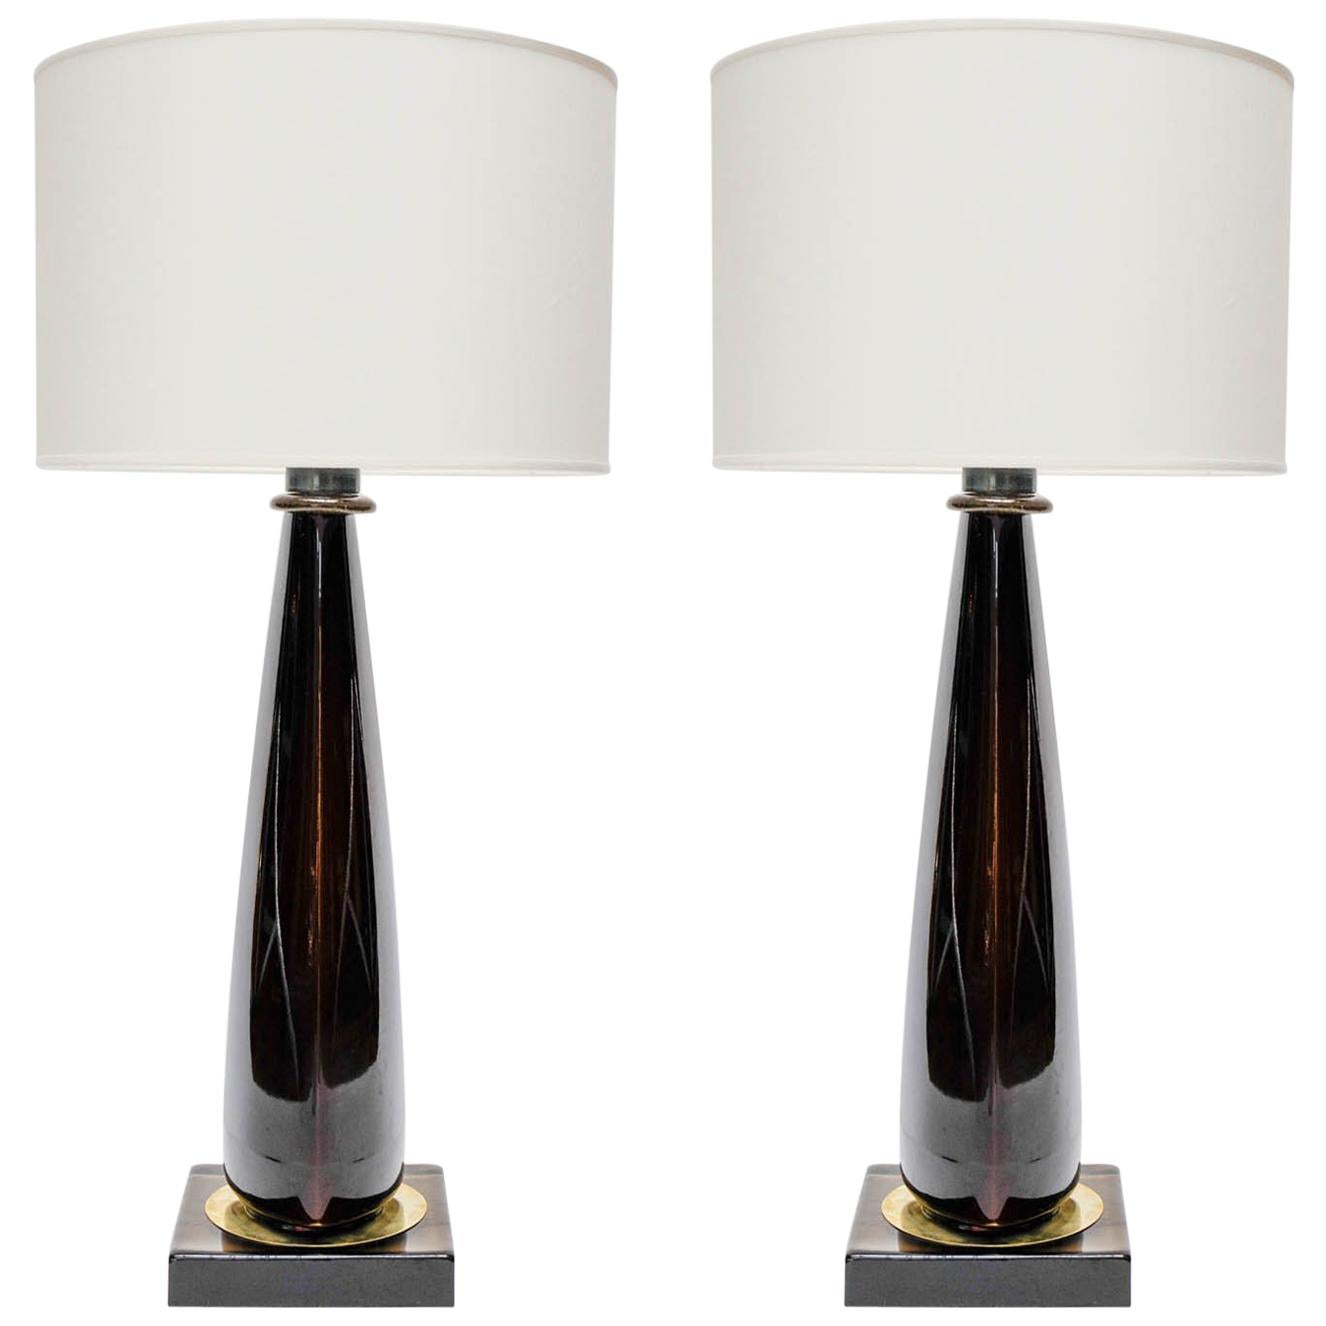 Tall Glass Bedside Lamps Shop, 57% OFF | edetaria.com